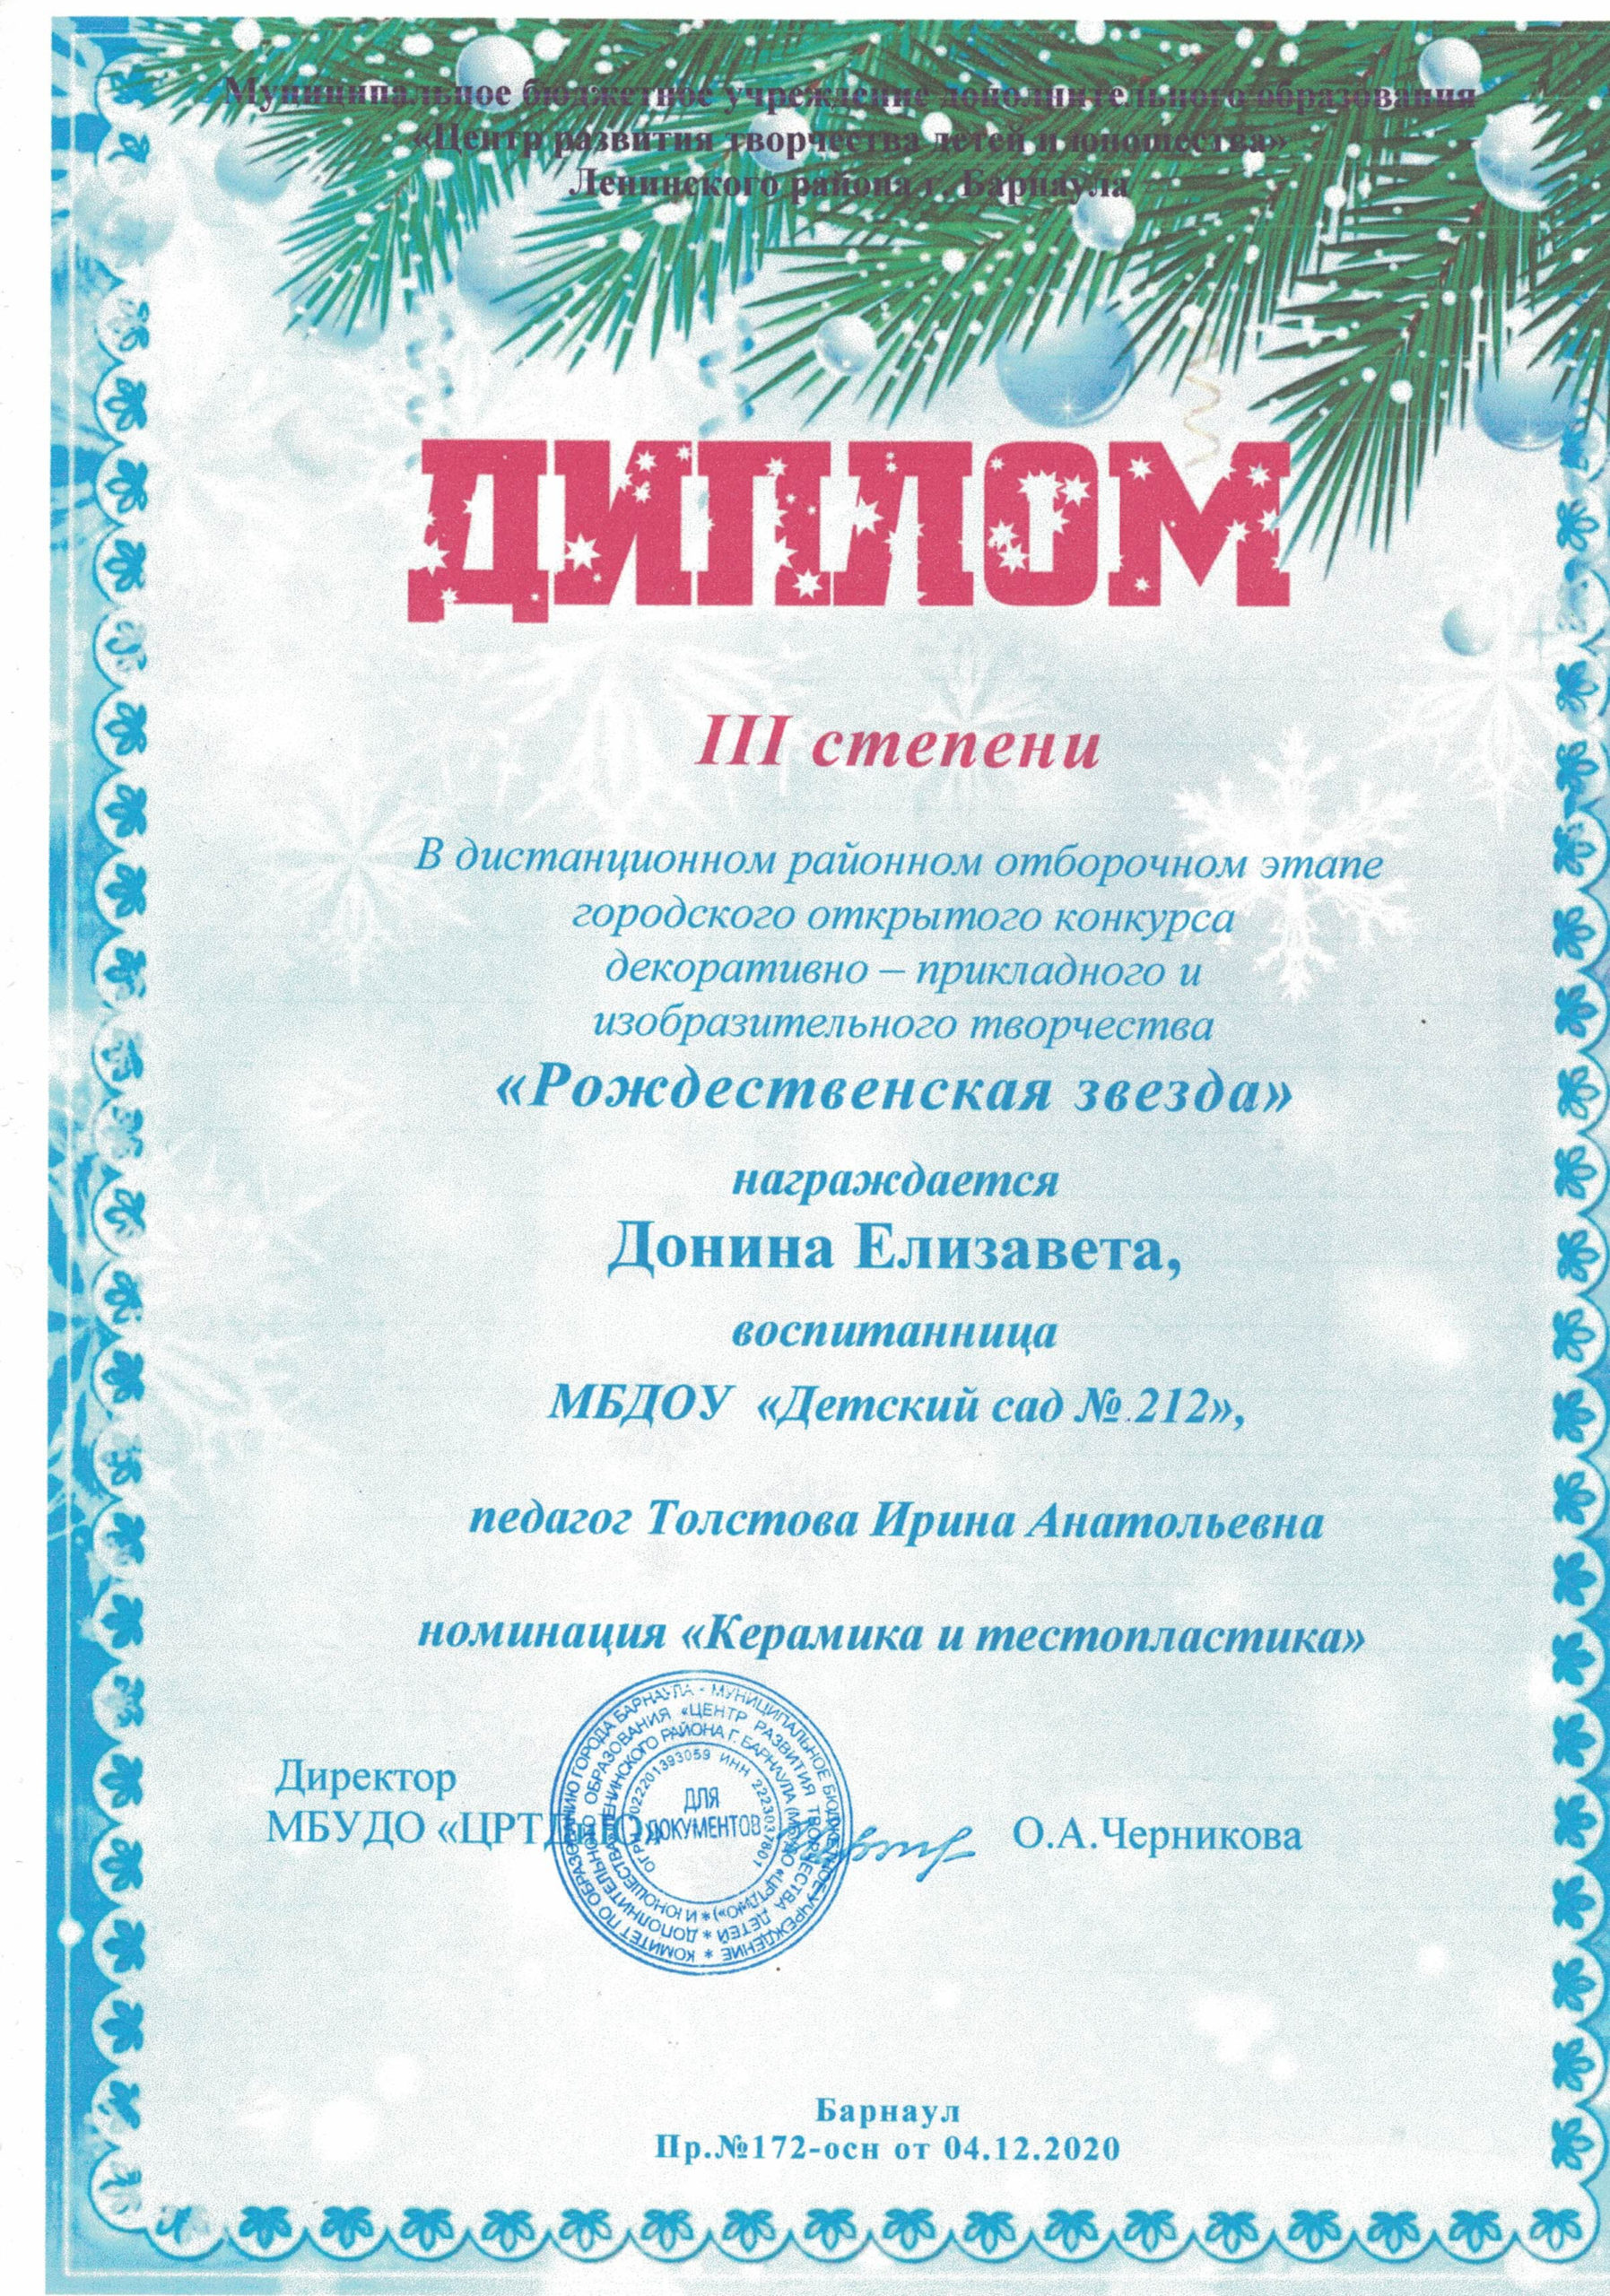 Диплом Рождественская звезда 314122020